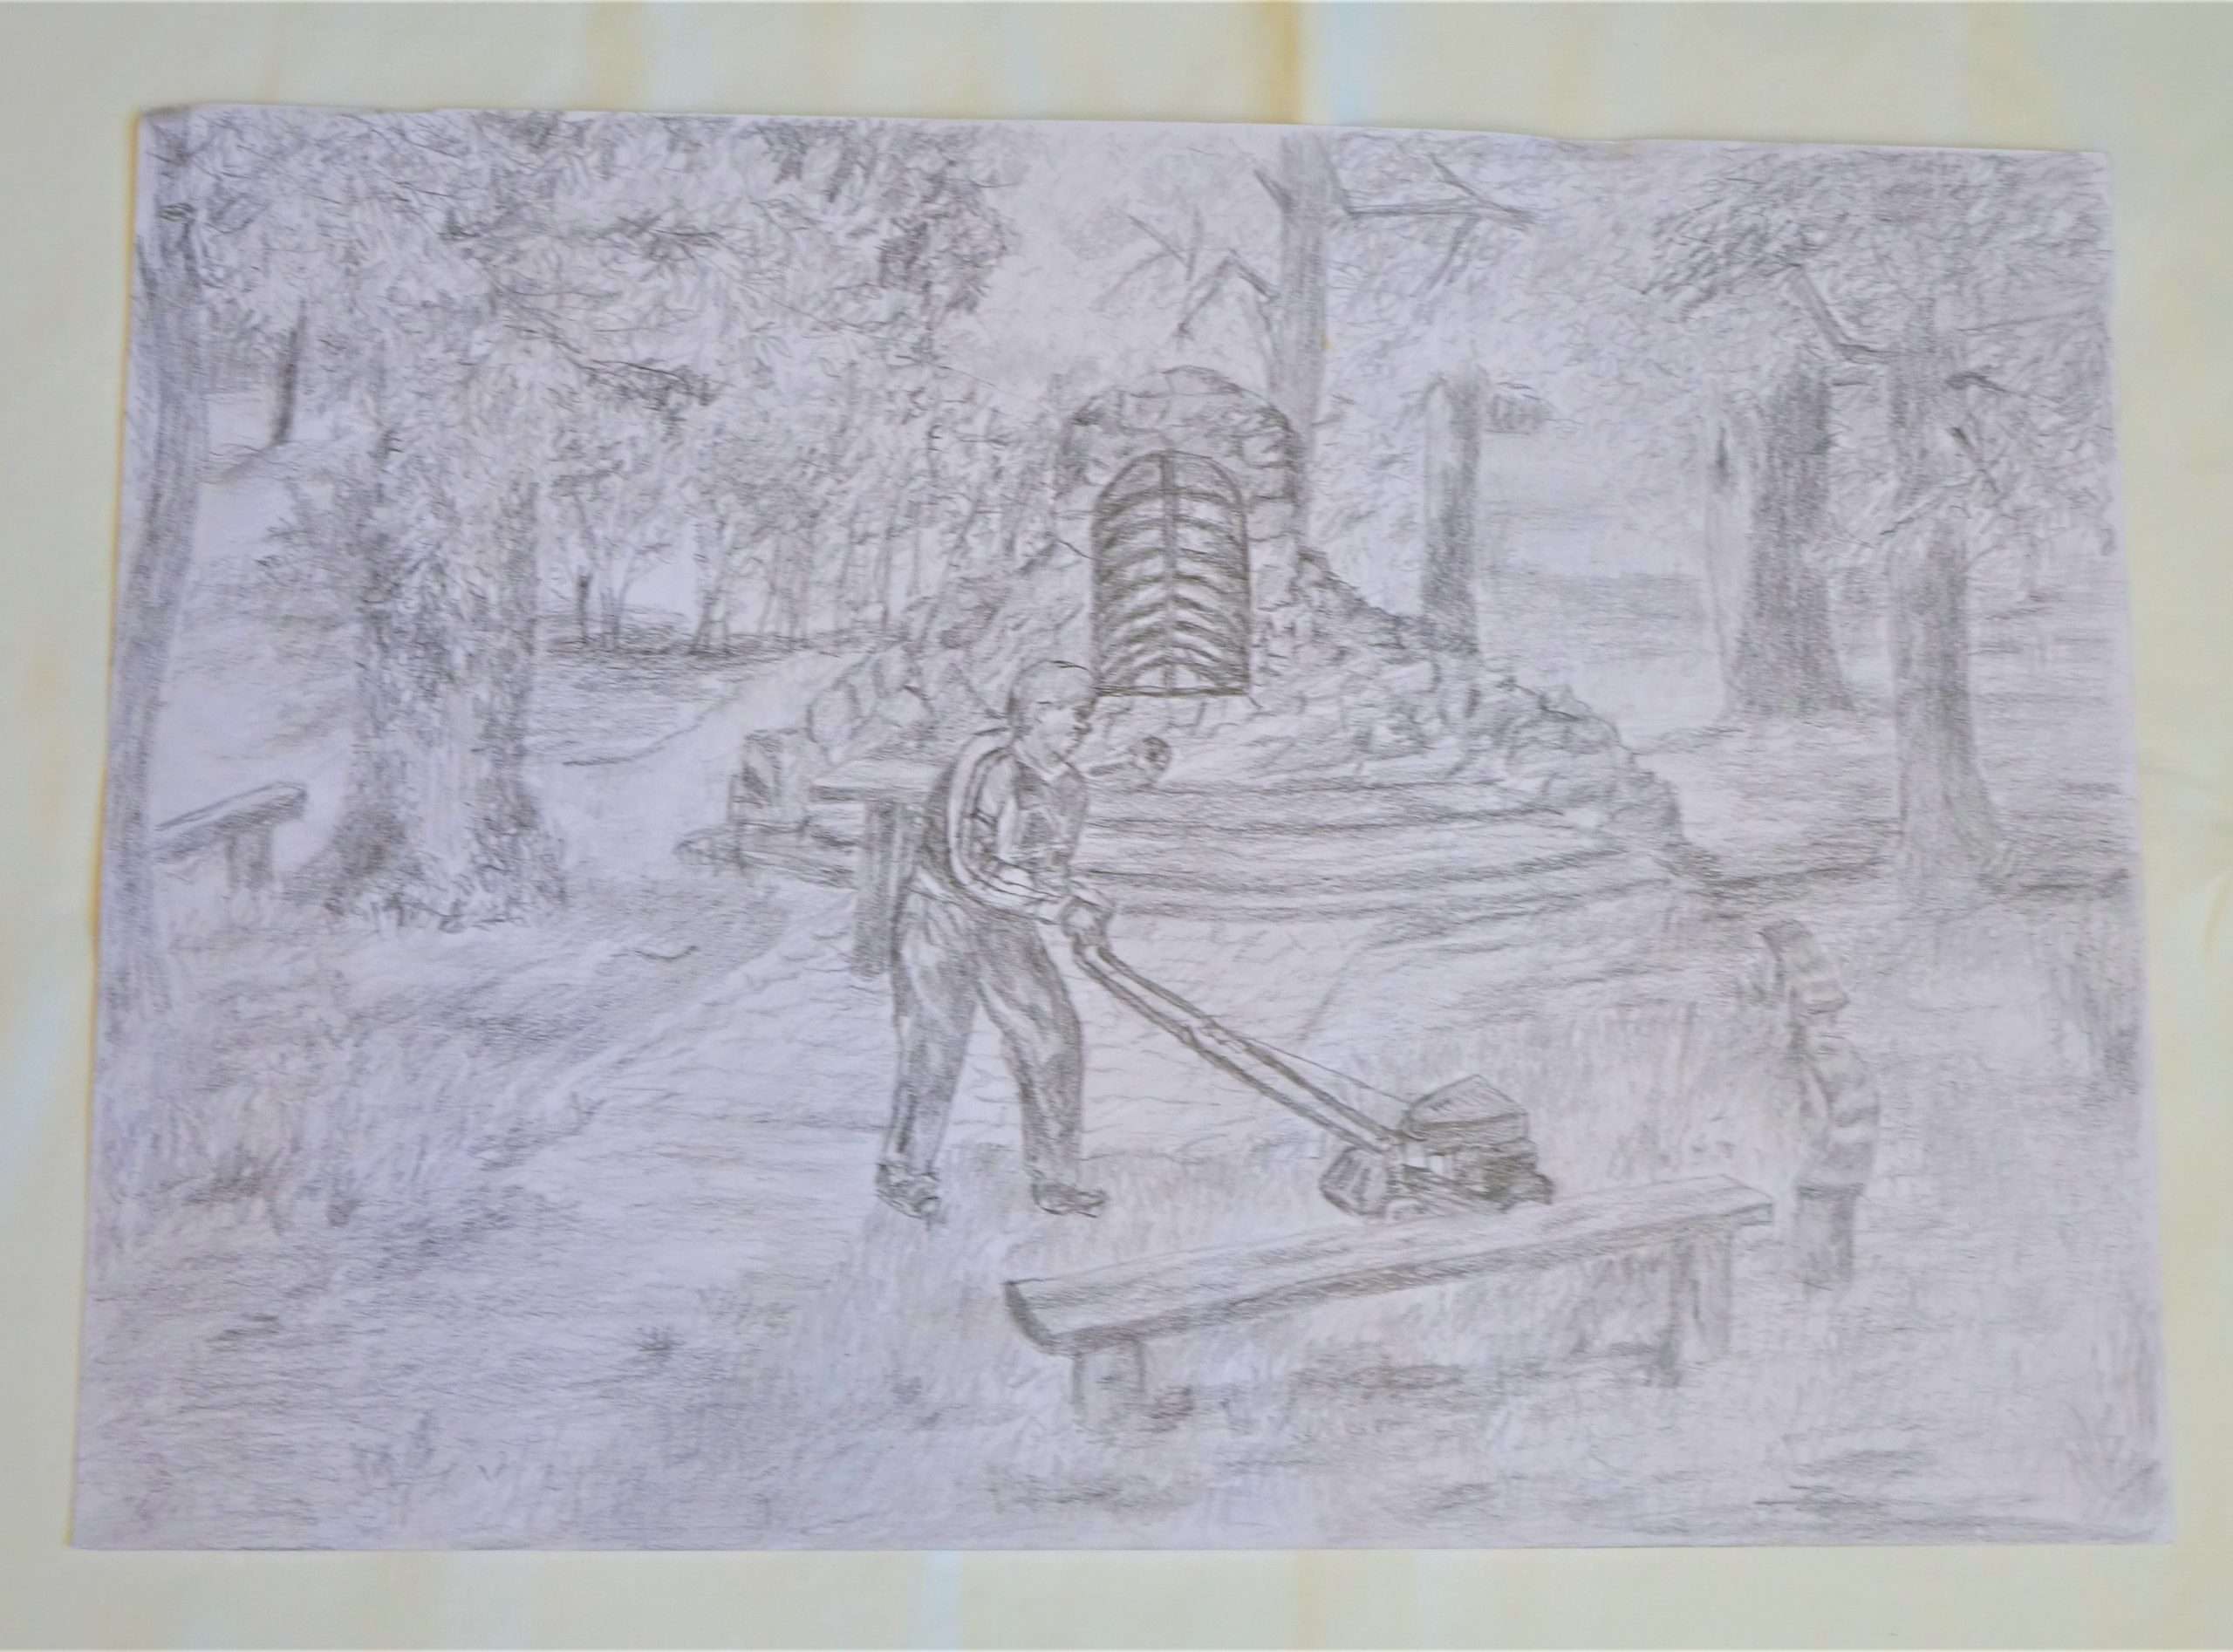 A grafitceruzával készített rajz a ház körüli munkát ábrázolja. A kép közepén egy férfi látható, fűnyírás közben. Körülötte padok és fák, mögötte pedig egy kisebb lépcsős betonfal található.